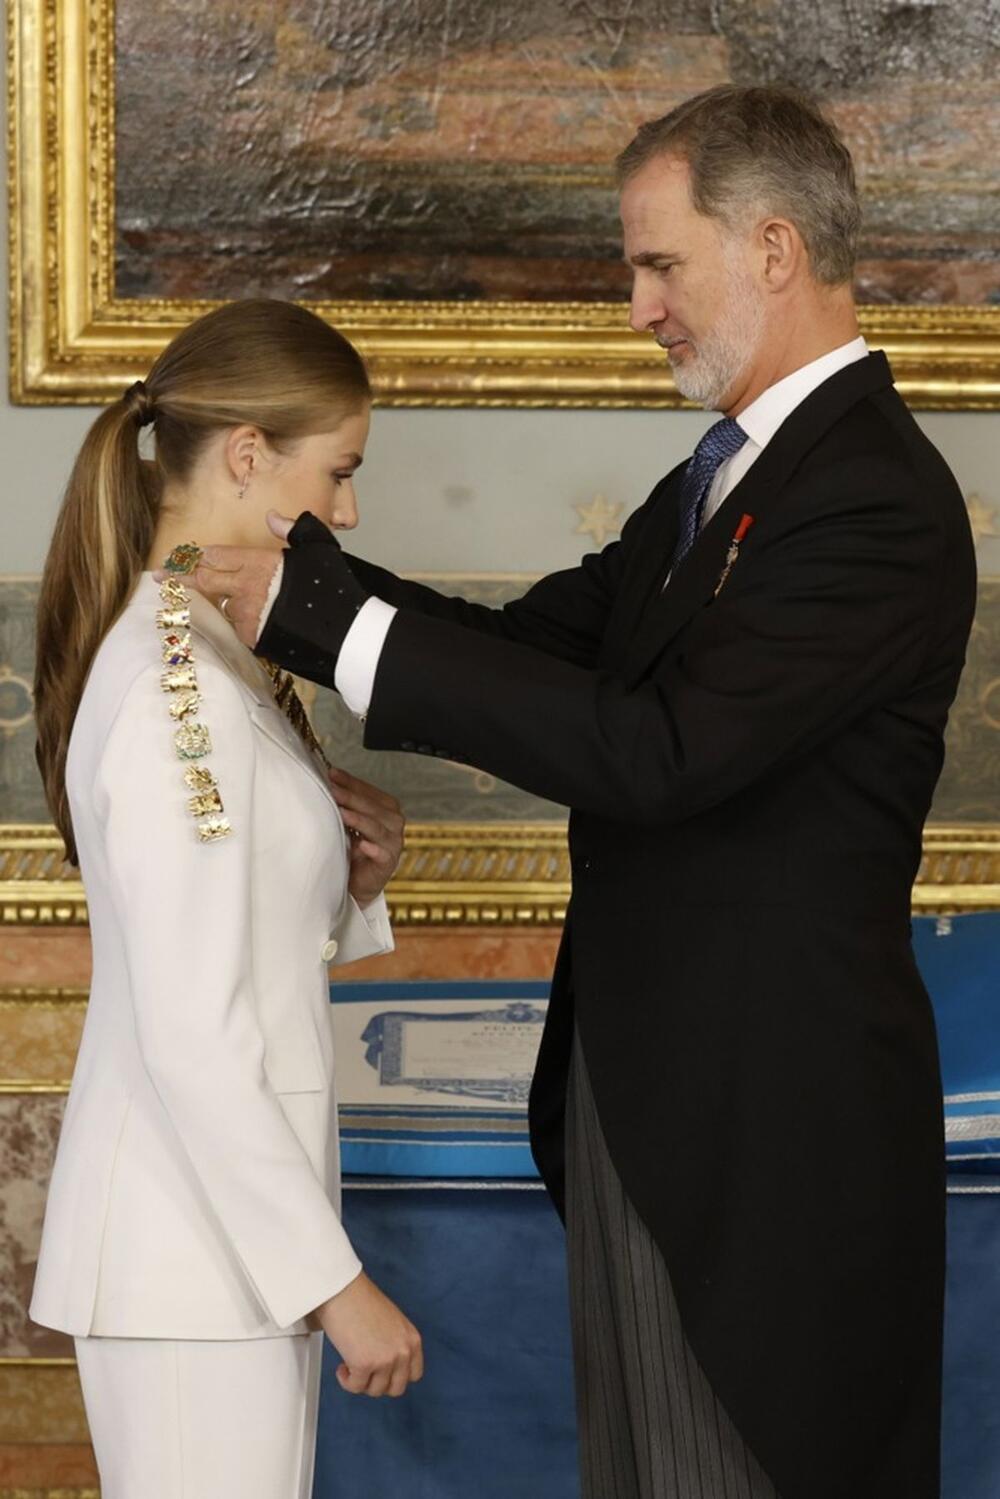 Princeza Leonor nedavno je nosila belo odelo na polaganju zakletve u Parlamentu Španije